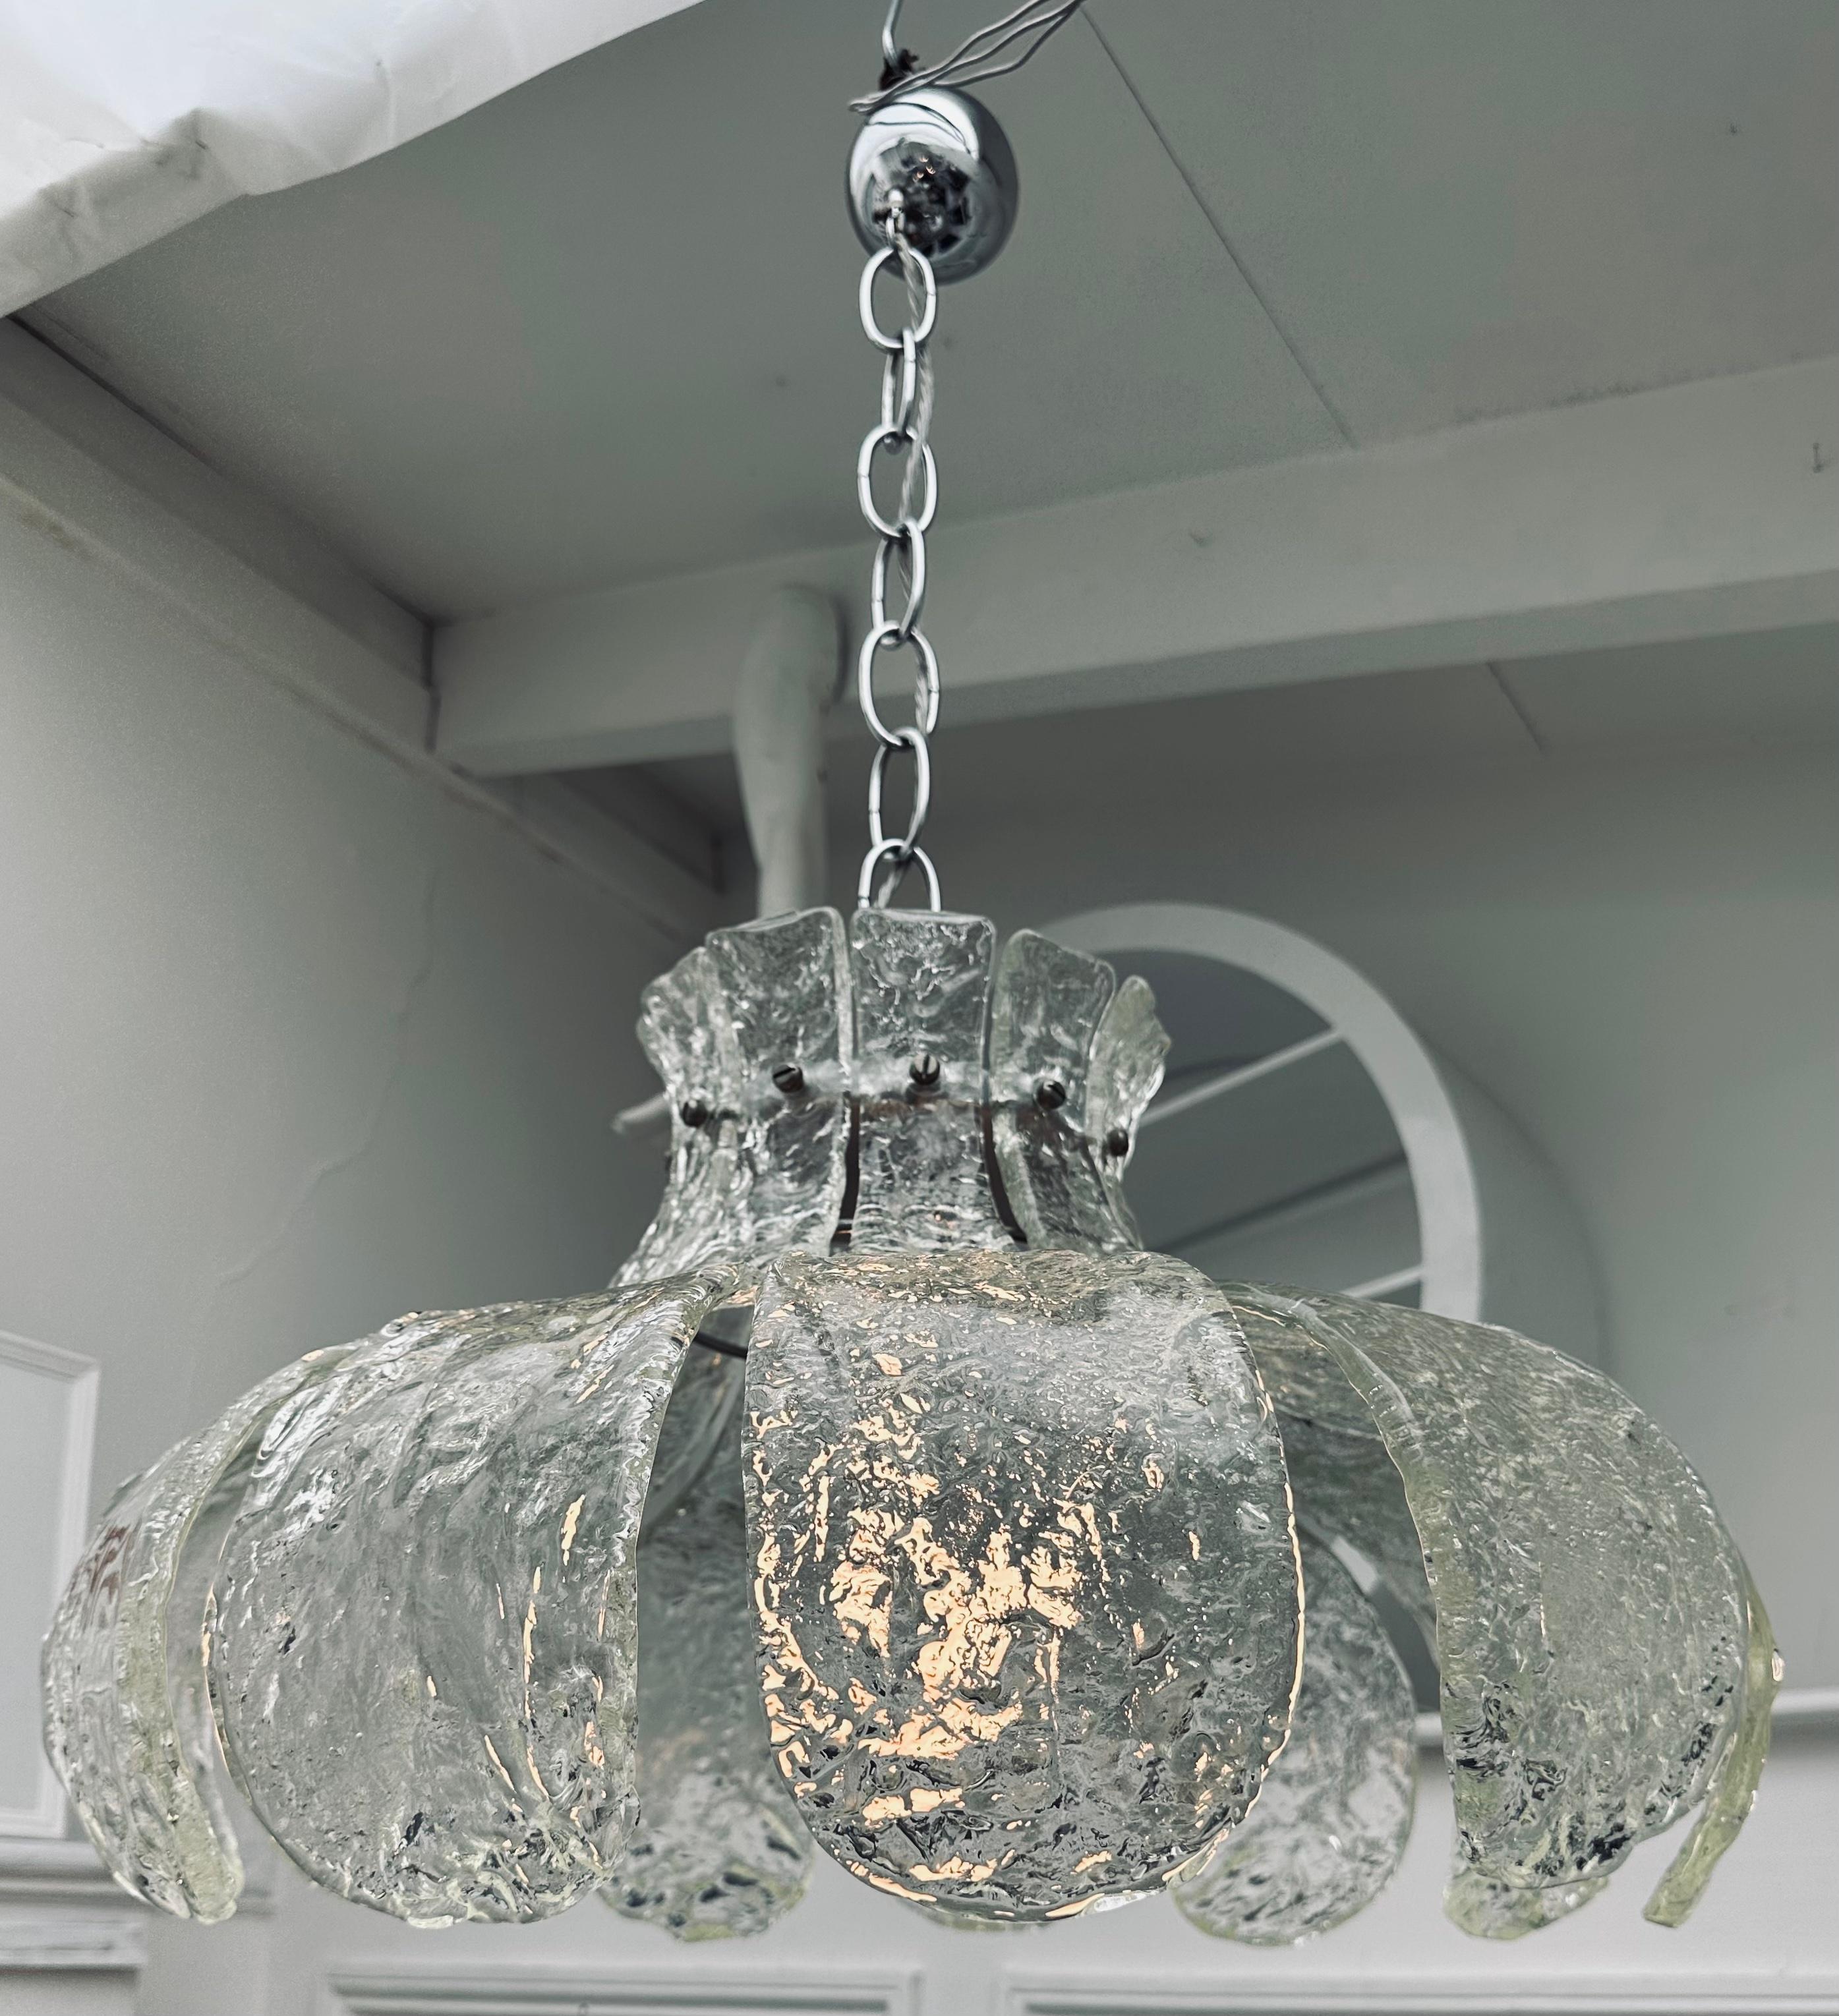 Suspension italienne en verre de Murano datant du milieu des années 1960, composée de 11 pétales individuels en verre transparent épais et texturé, fixés à l'aide d'une petite vis chromée à tête plate sur un cadre en métal chromé pour former une